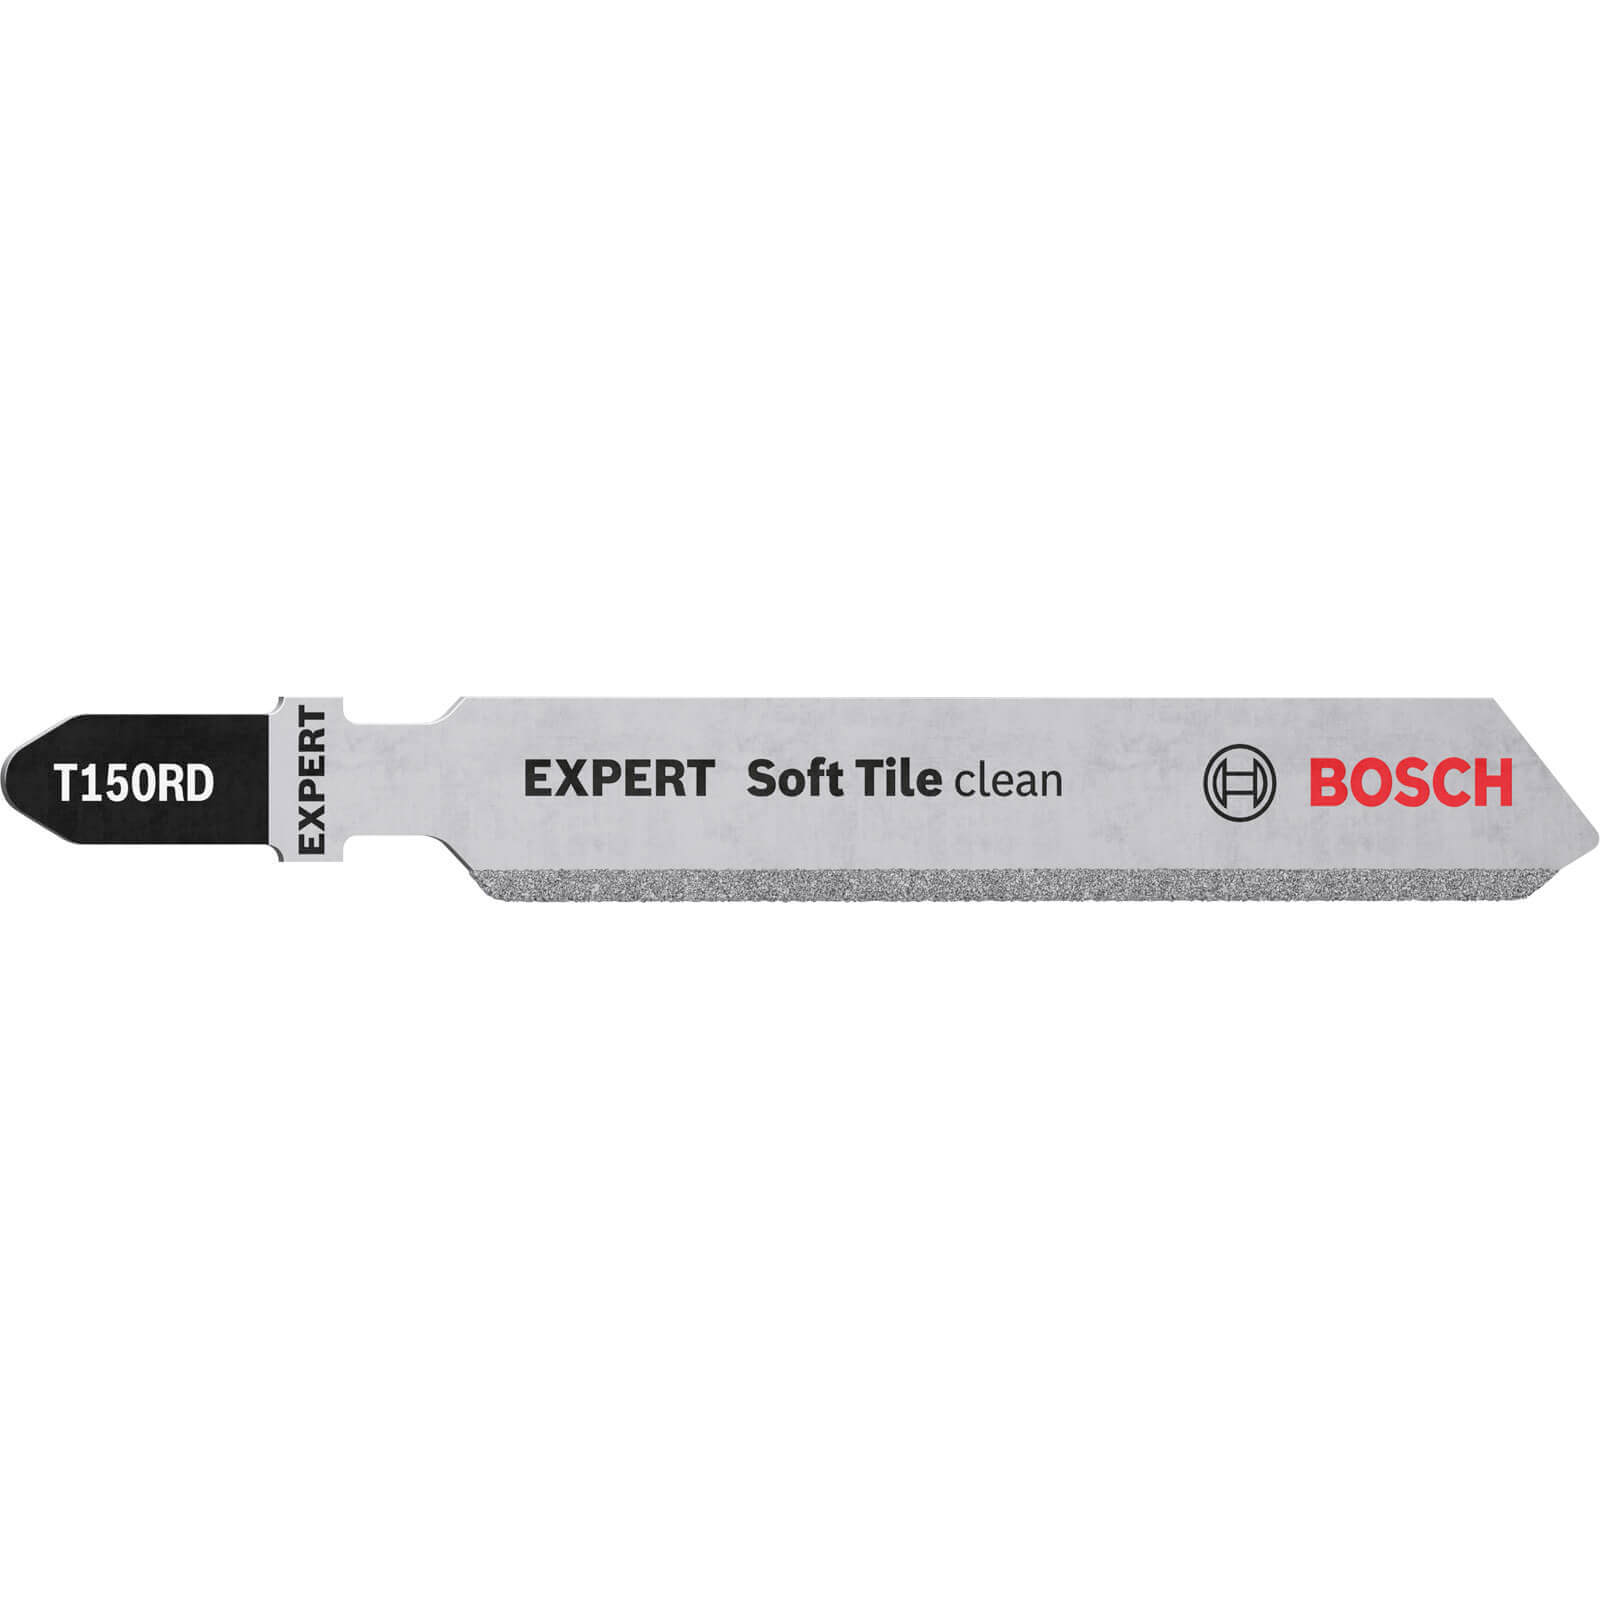 Bosch Expert T150RD Soft Tile Clean Cut Jigsaw Blades Pack of 3